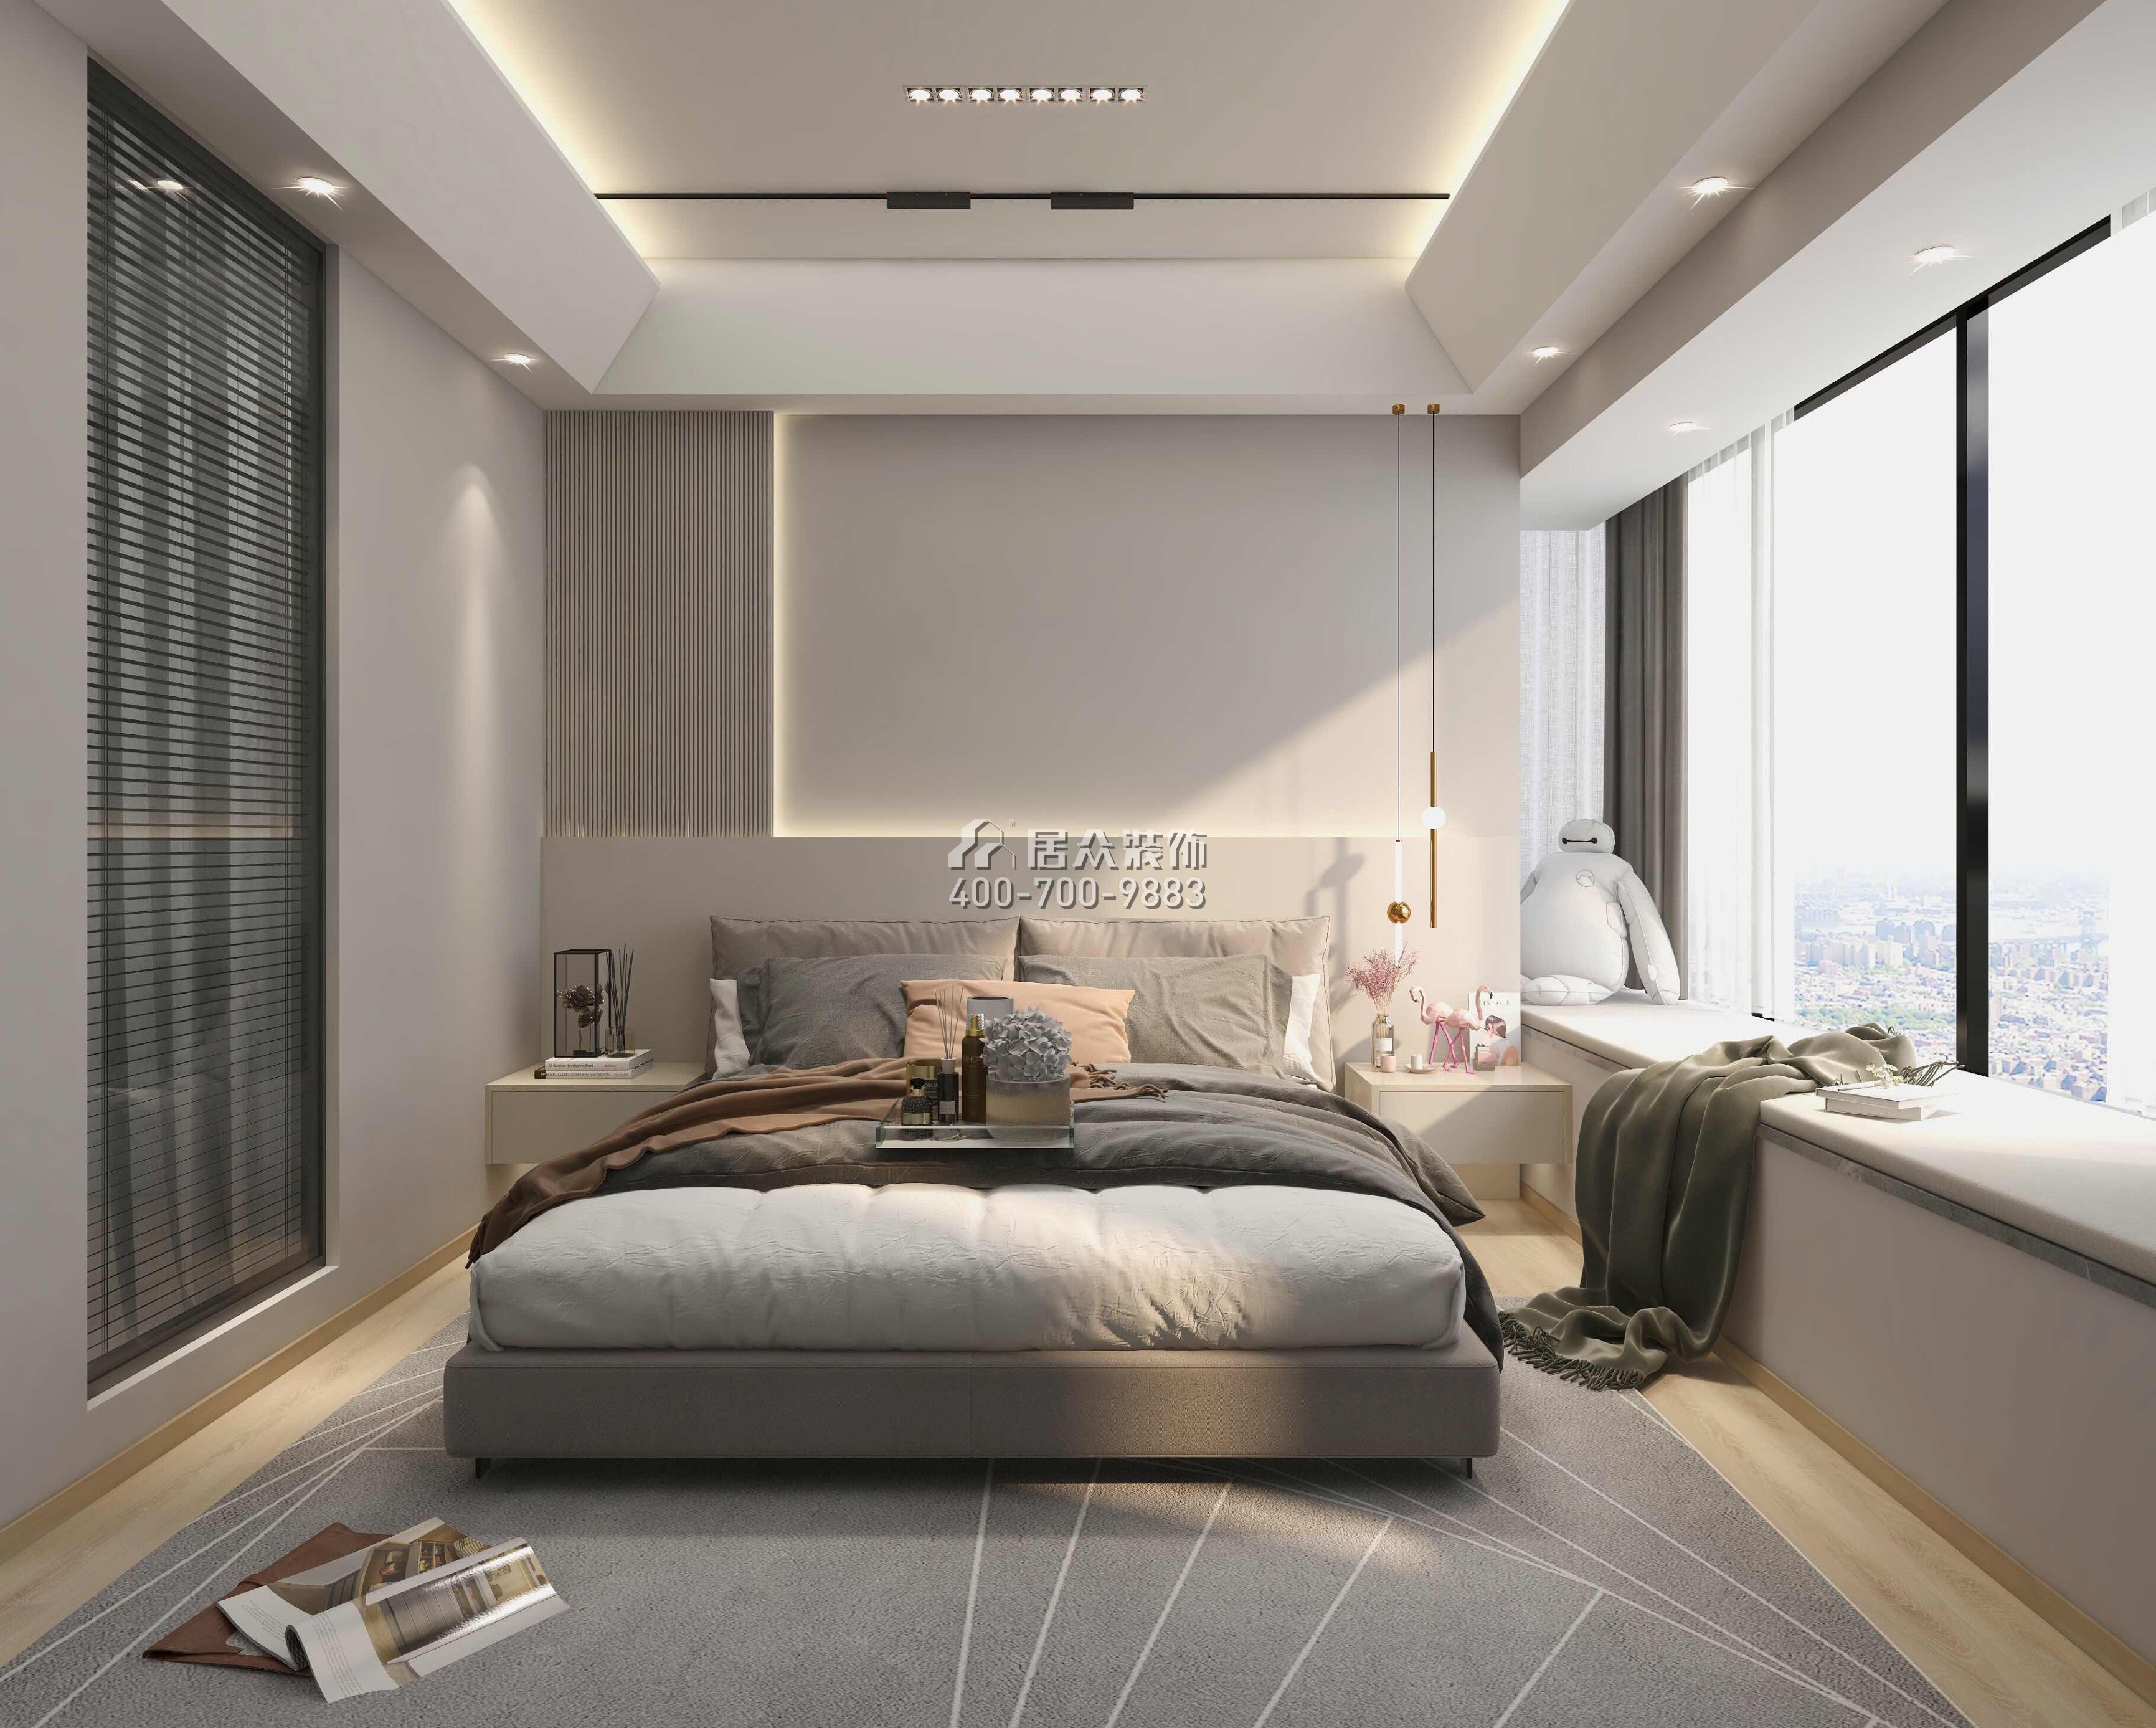 华发四季半岛水晶湾117平方米现代简约风格平层户型卧室装修效果图